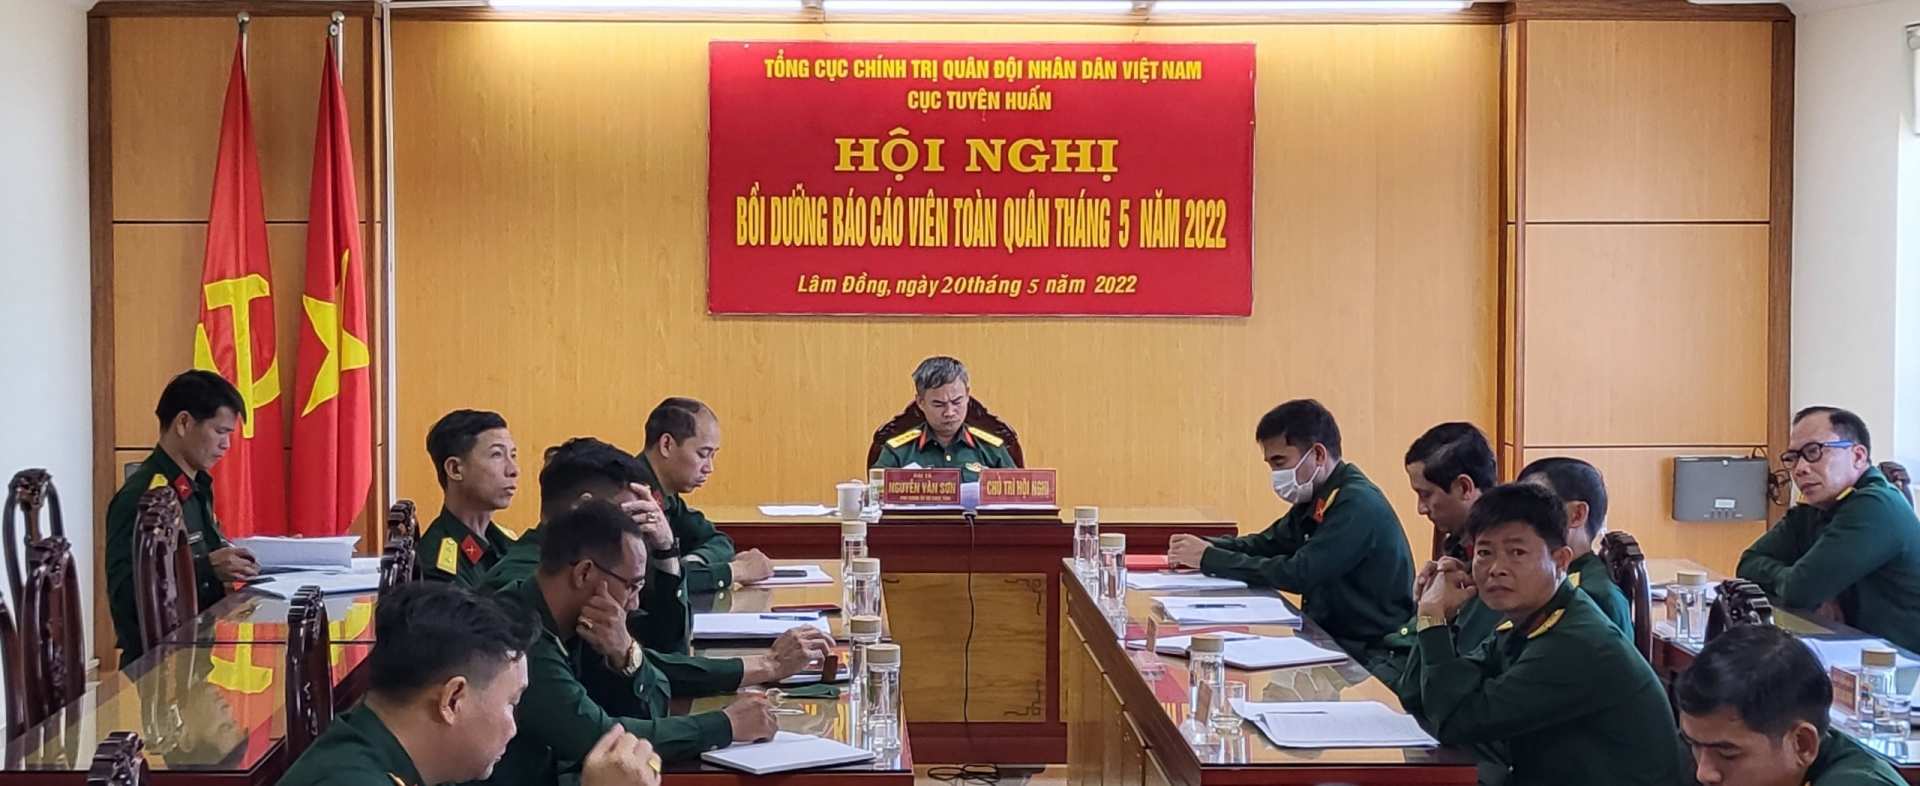 Đại tá Nguyễn Văn Sơn - Phó Chính uỷ Bộ Chỉ huy Quân sự tỉnh cùng các báo cáo viên trong Bộ Chỉ huy Quân sự tỉnh tham dự hội nghị tại điểm cầu Lâm Đồng